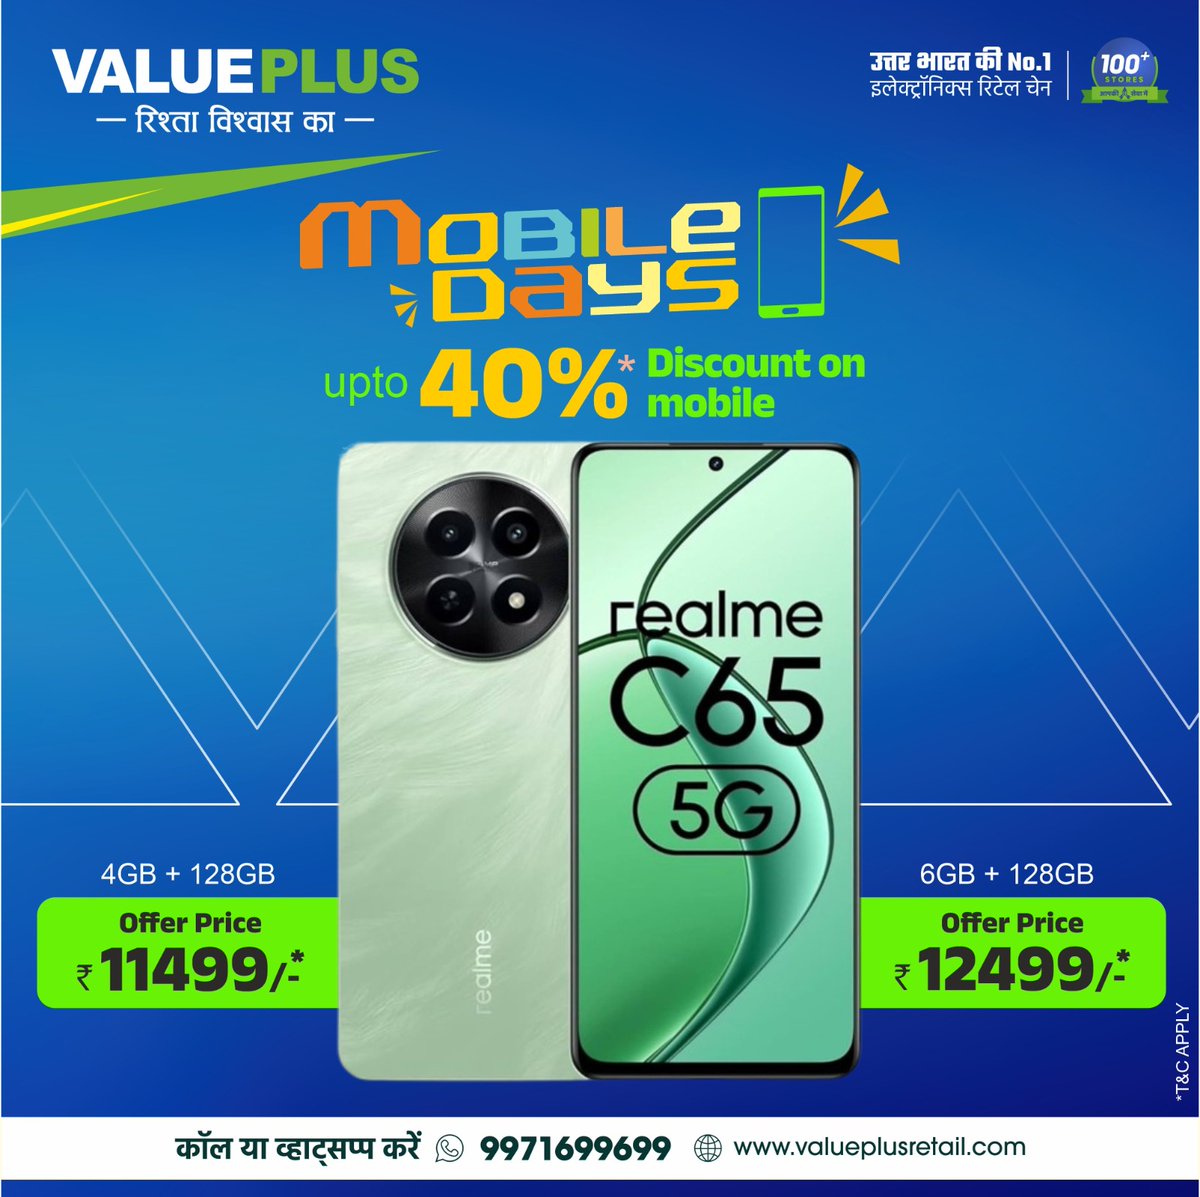 नया Realme C65 5G - आपके सपनों का स्मार्टफोन! ✨📱 💥 स्टाइलिश डिजाइन, जबरदस्त परफॉर्मेंस और अविश्वसनीय कीमत! अभी ऑर्डर करें कॉल करें: ☎ 9971699699 ऑनलाइन खरीदें: valueplusretail.com पर जाएं और अपना फोन ऑनलाइन ऑर्डर करें नियम और शर्तें लागू* #RealmeC655G #5GSmartphone